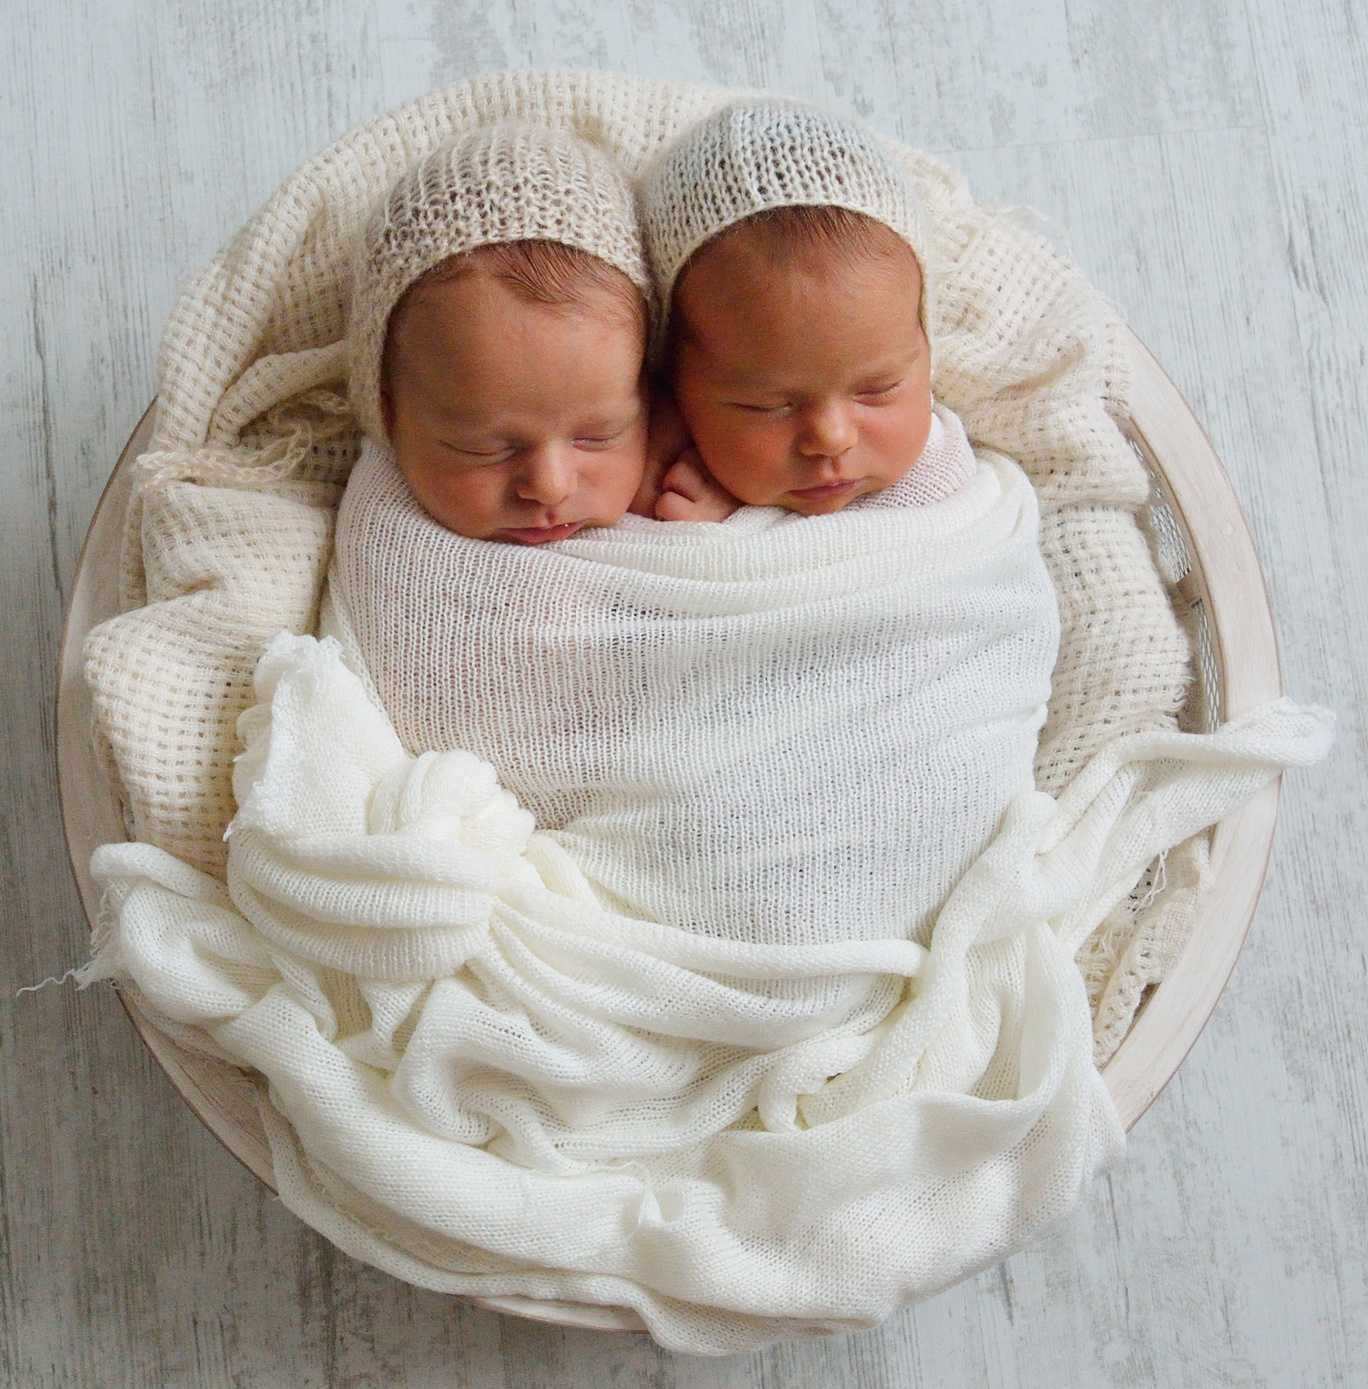 Embarazo de gemelos o mellizos